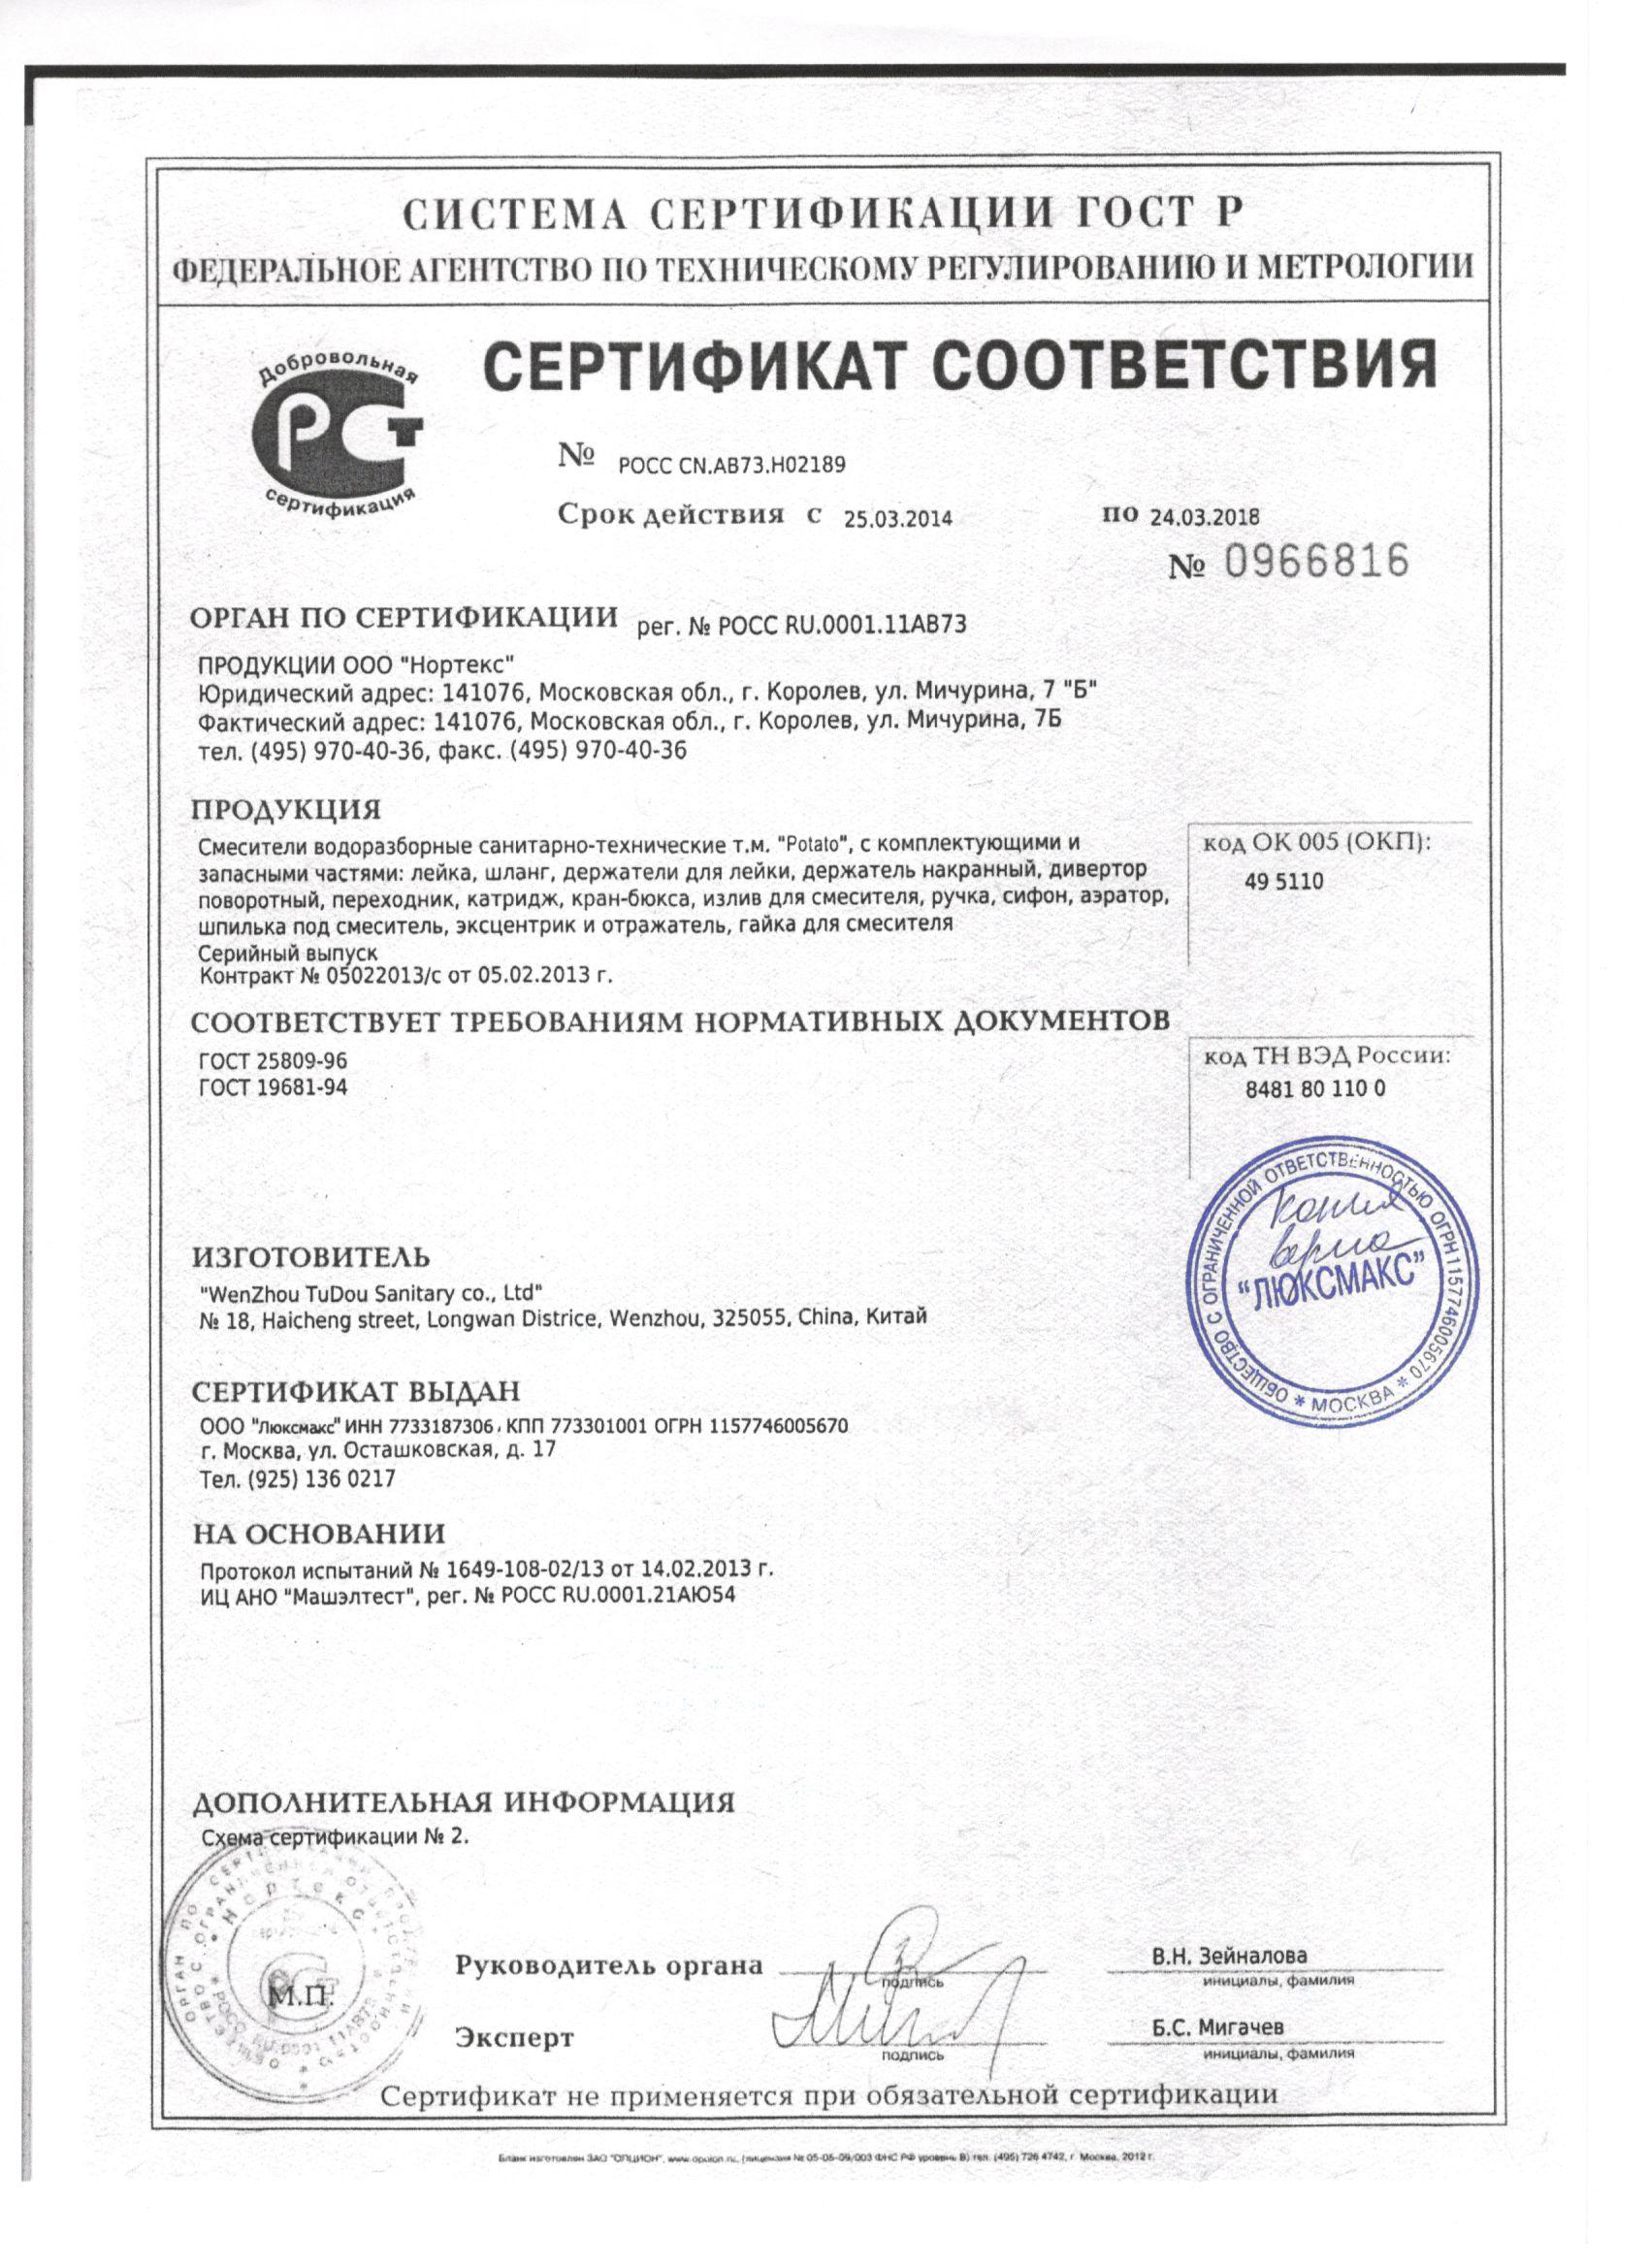 Сертификат на кран шаровый. Смесители Милардо сертификат соответствия на продукцию. Смеситель Ligeya сертификат соответствия. Смеситель для ванн ом-672 сертификат. NB 26 смеситель voda сертификат соответствия.